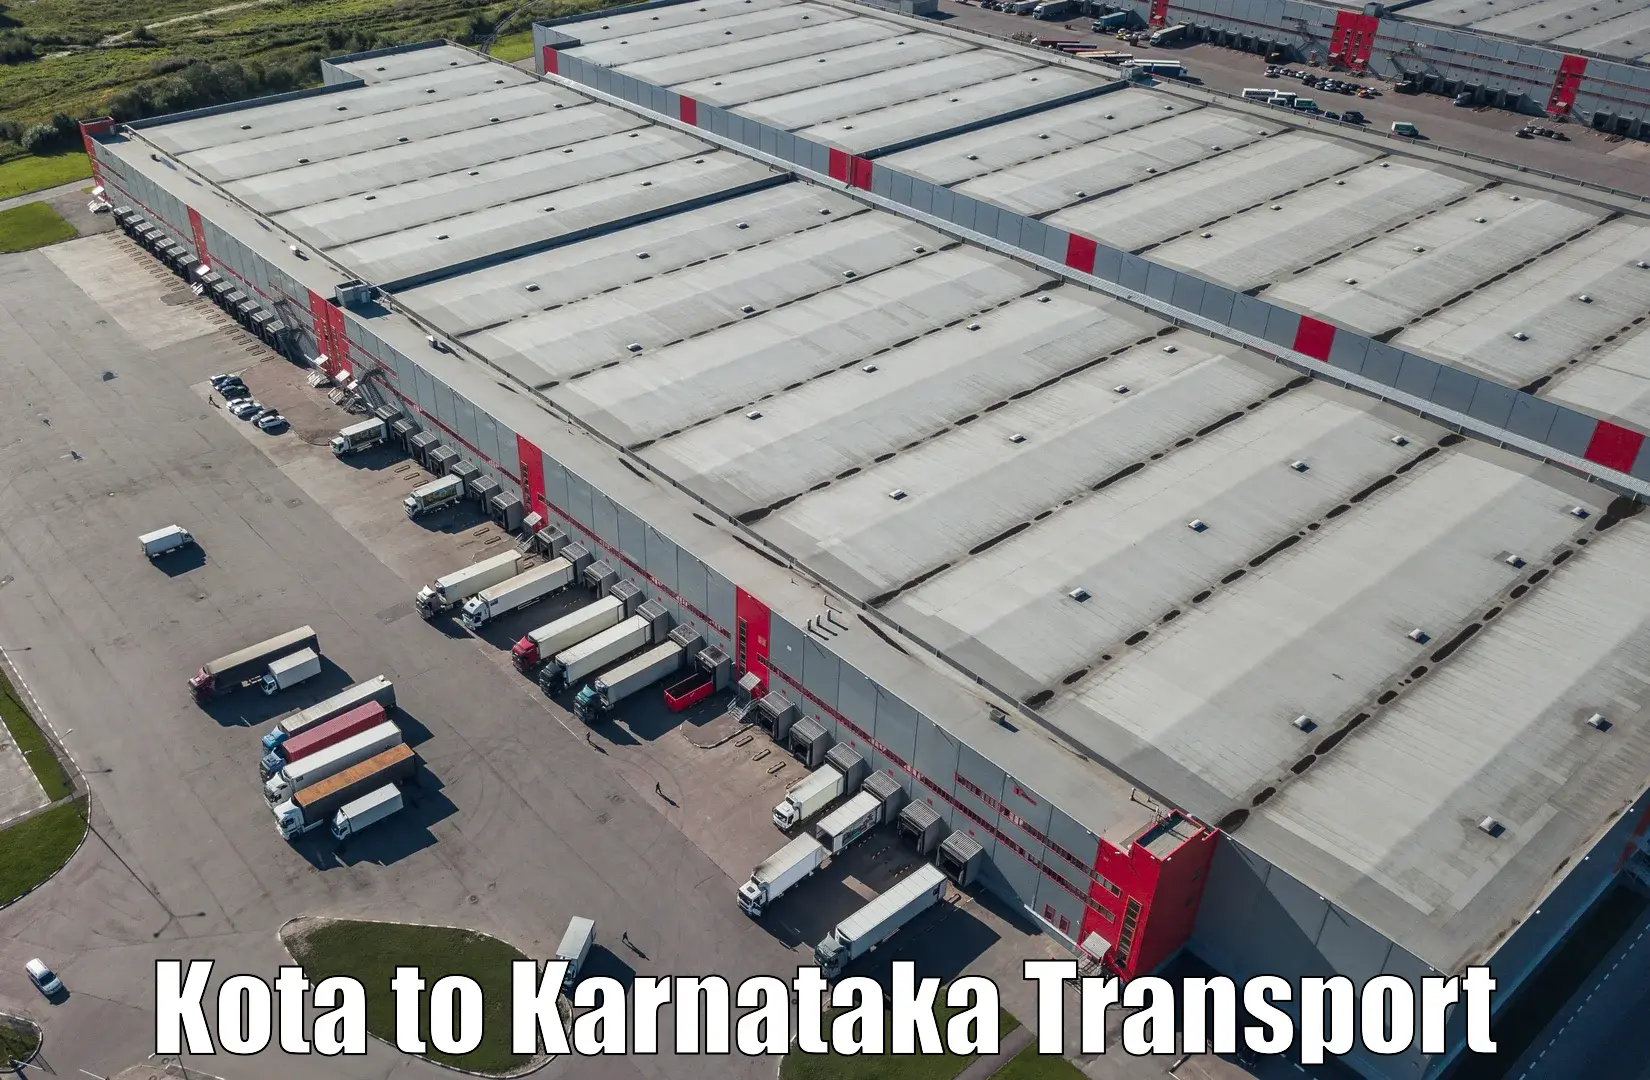 All India transport service Kota to Basavakalyan